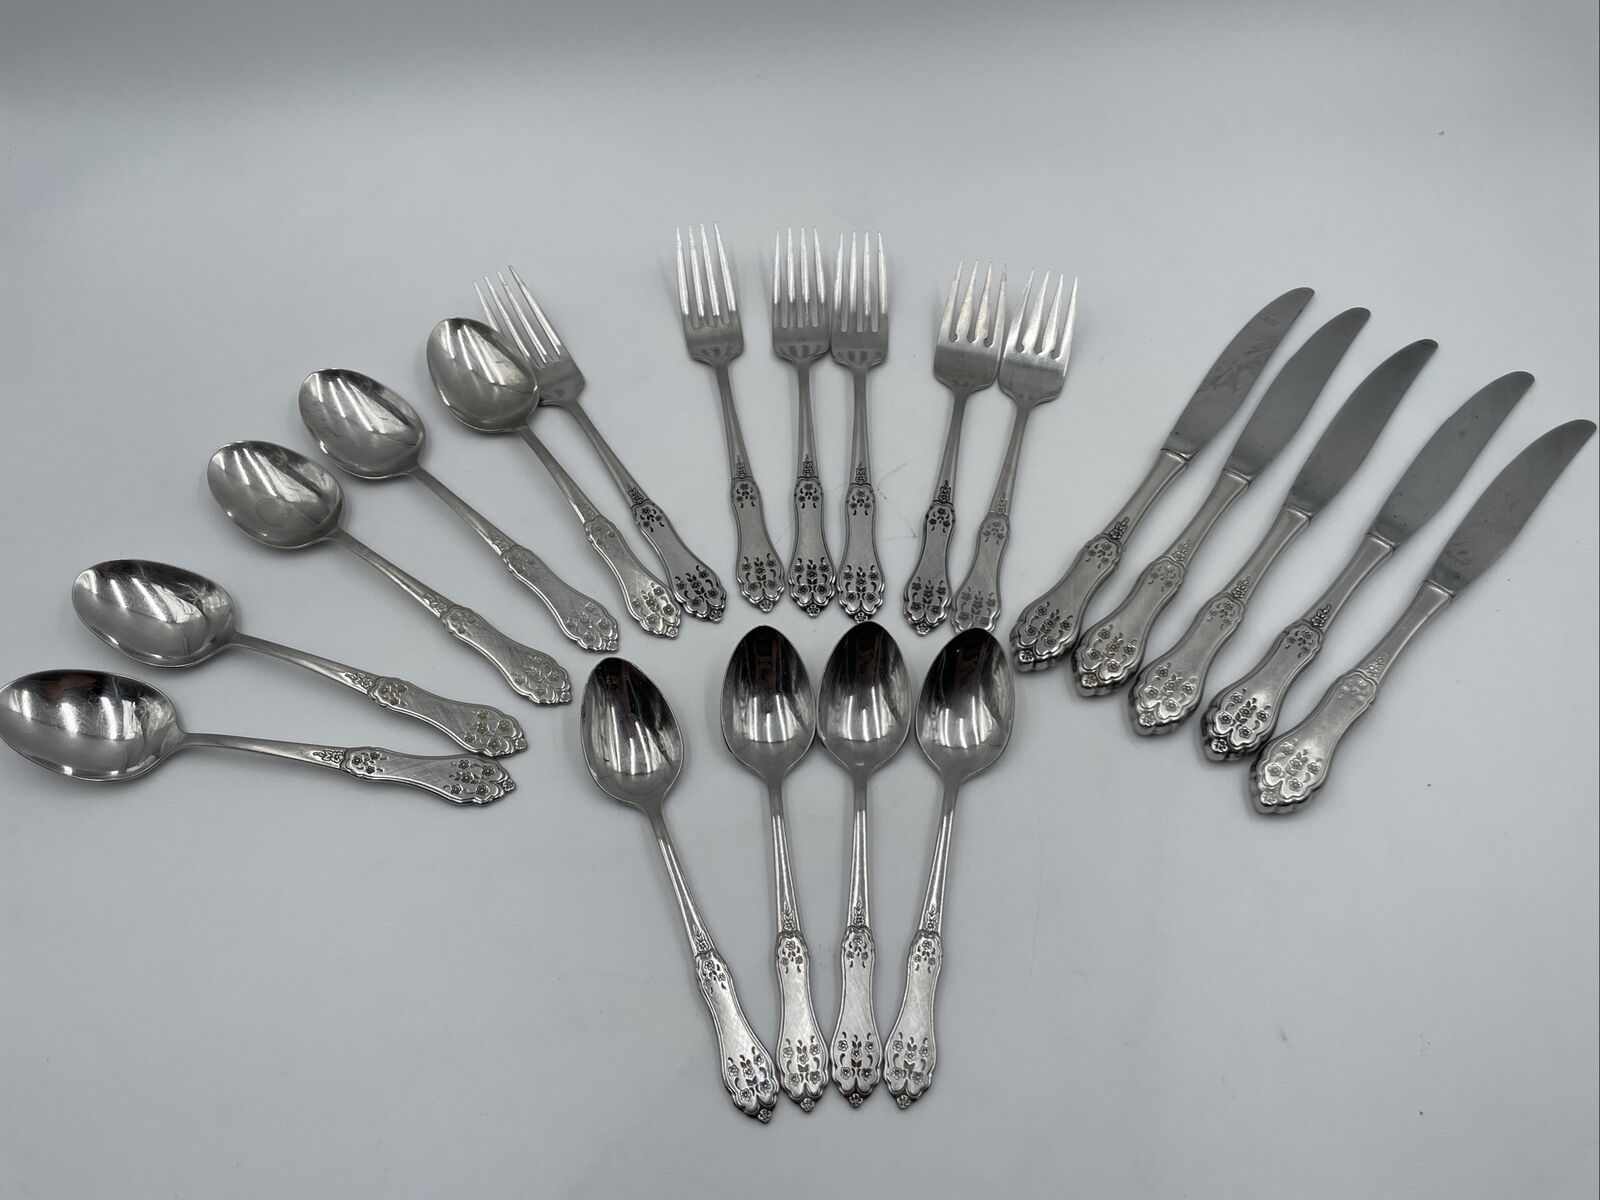 Set of 20 Vintage Oneida Flatware Fork Knife Spoon Floral Brushed Silver Matte